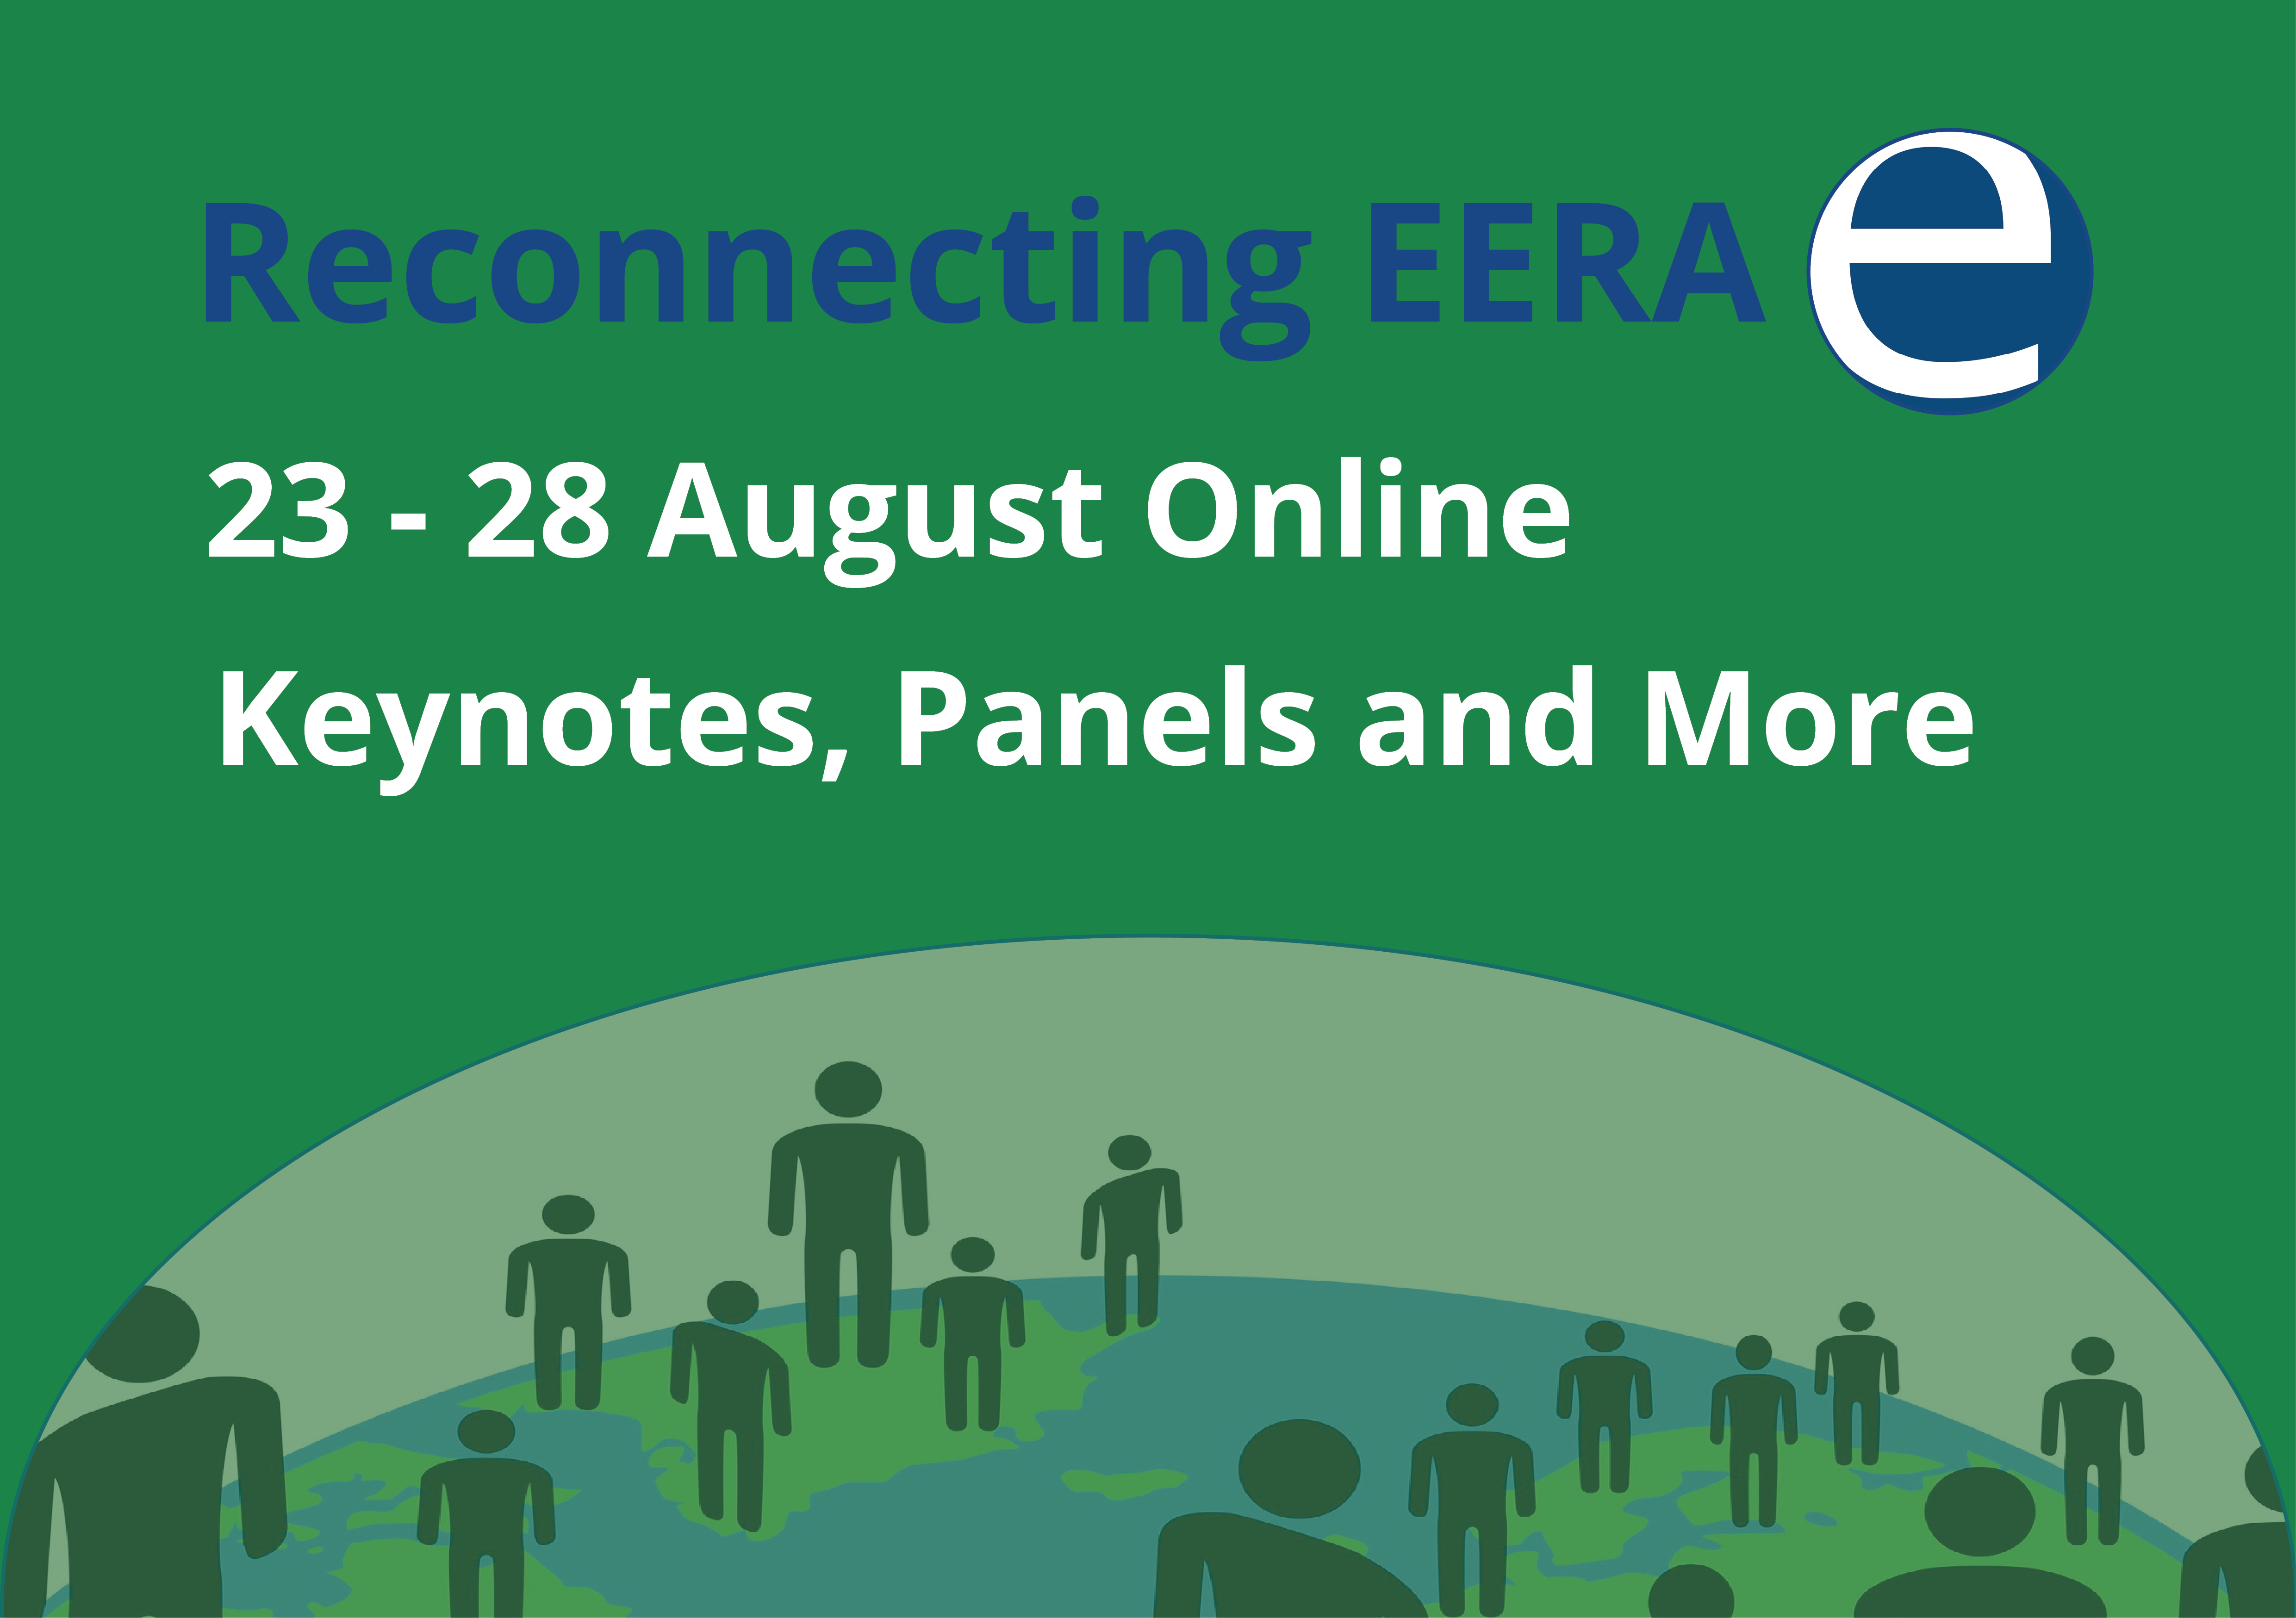 'Reconnecting EERA' 23 - 28 August Online